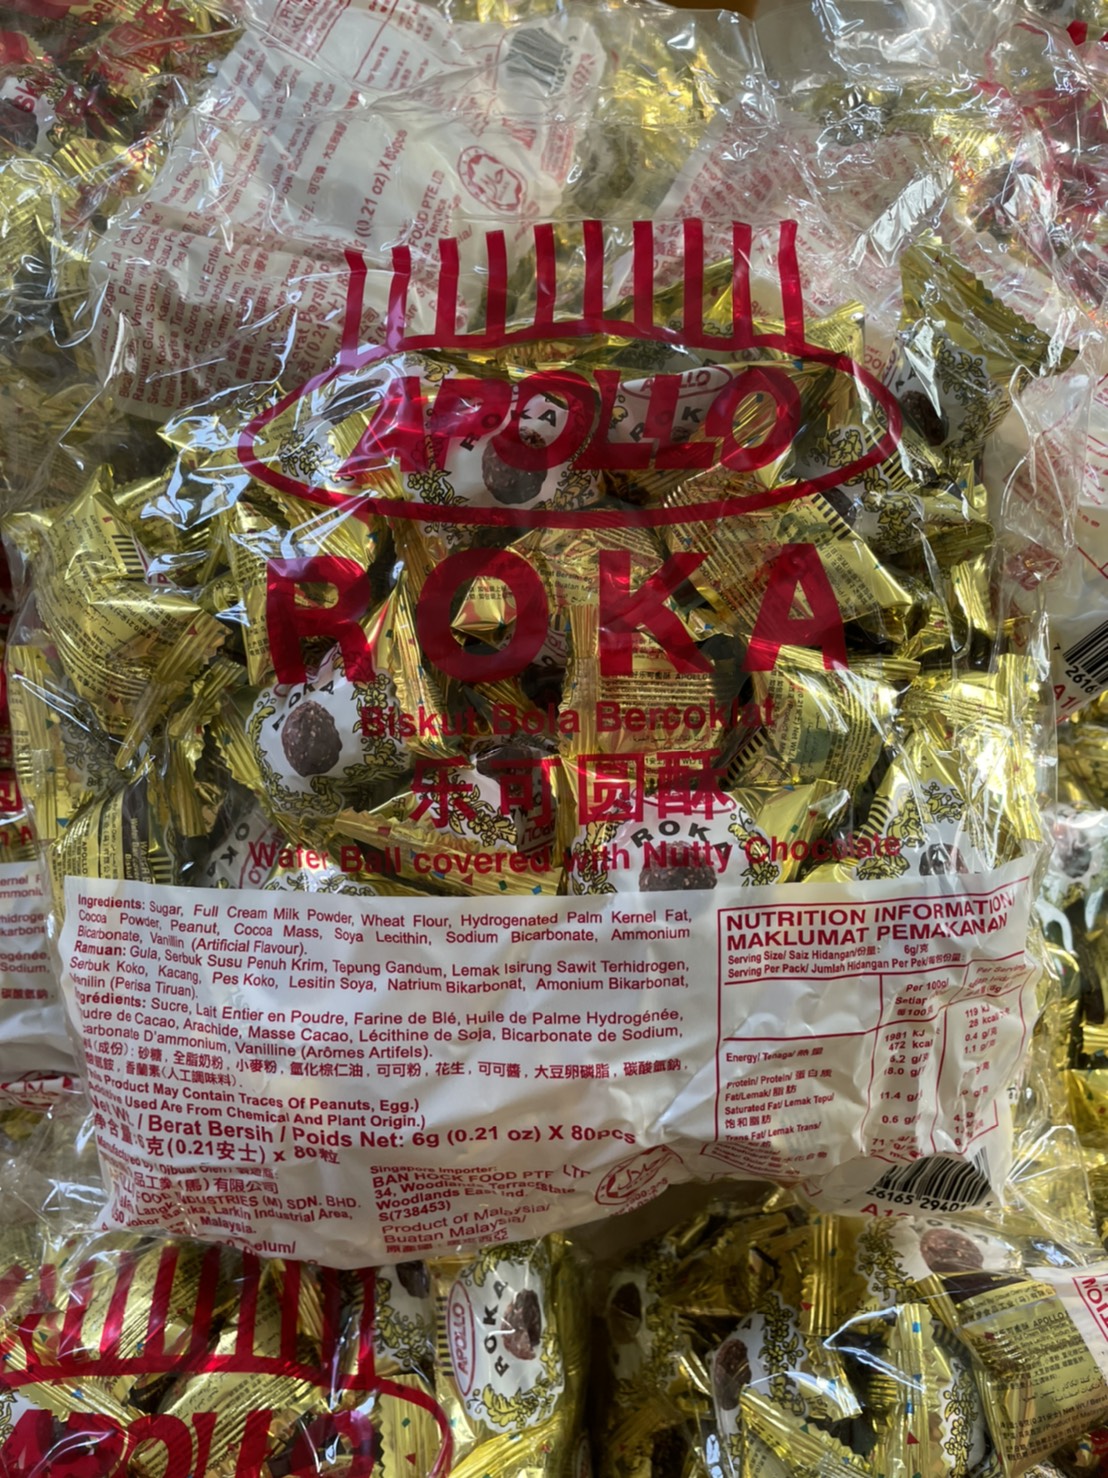 ??โรก้า Apollo Roka เวเฟอร์ลูกกลมสอดไส้ช็อคโกแลต ช็อคโกแลต ช็อคโกแลตบอล??